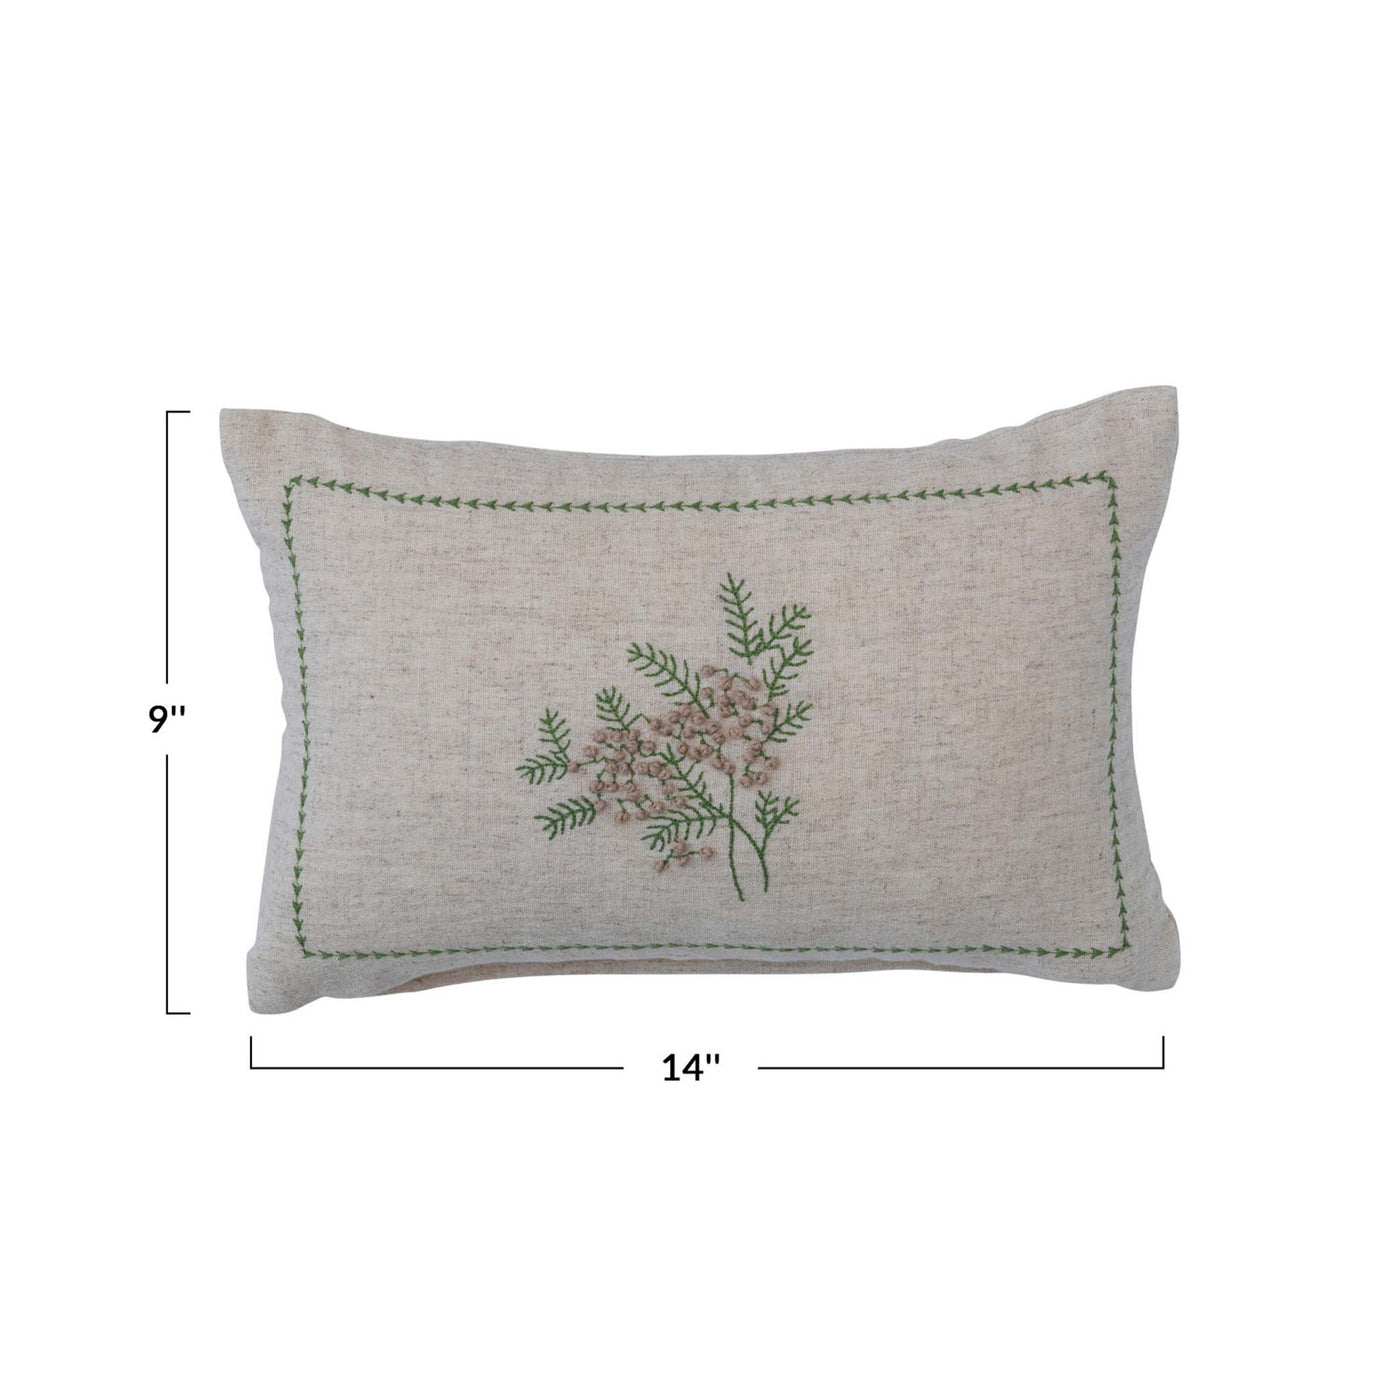 Cotton & Linen Evergreen Lumbar/Accent Pillow